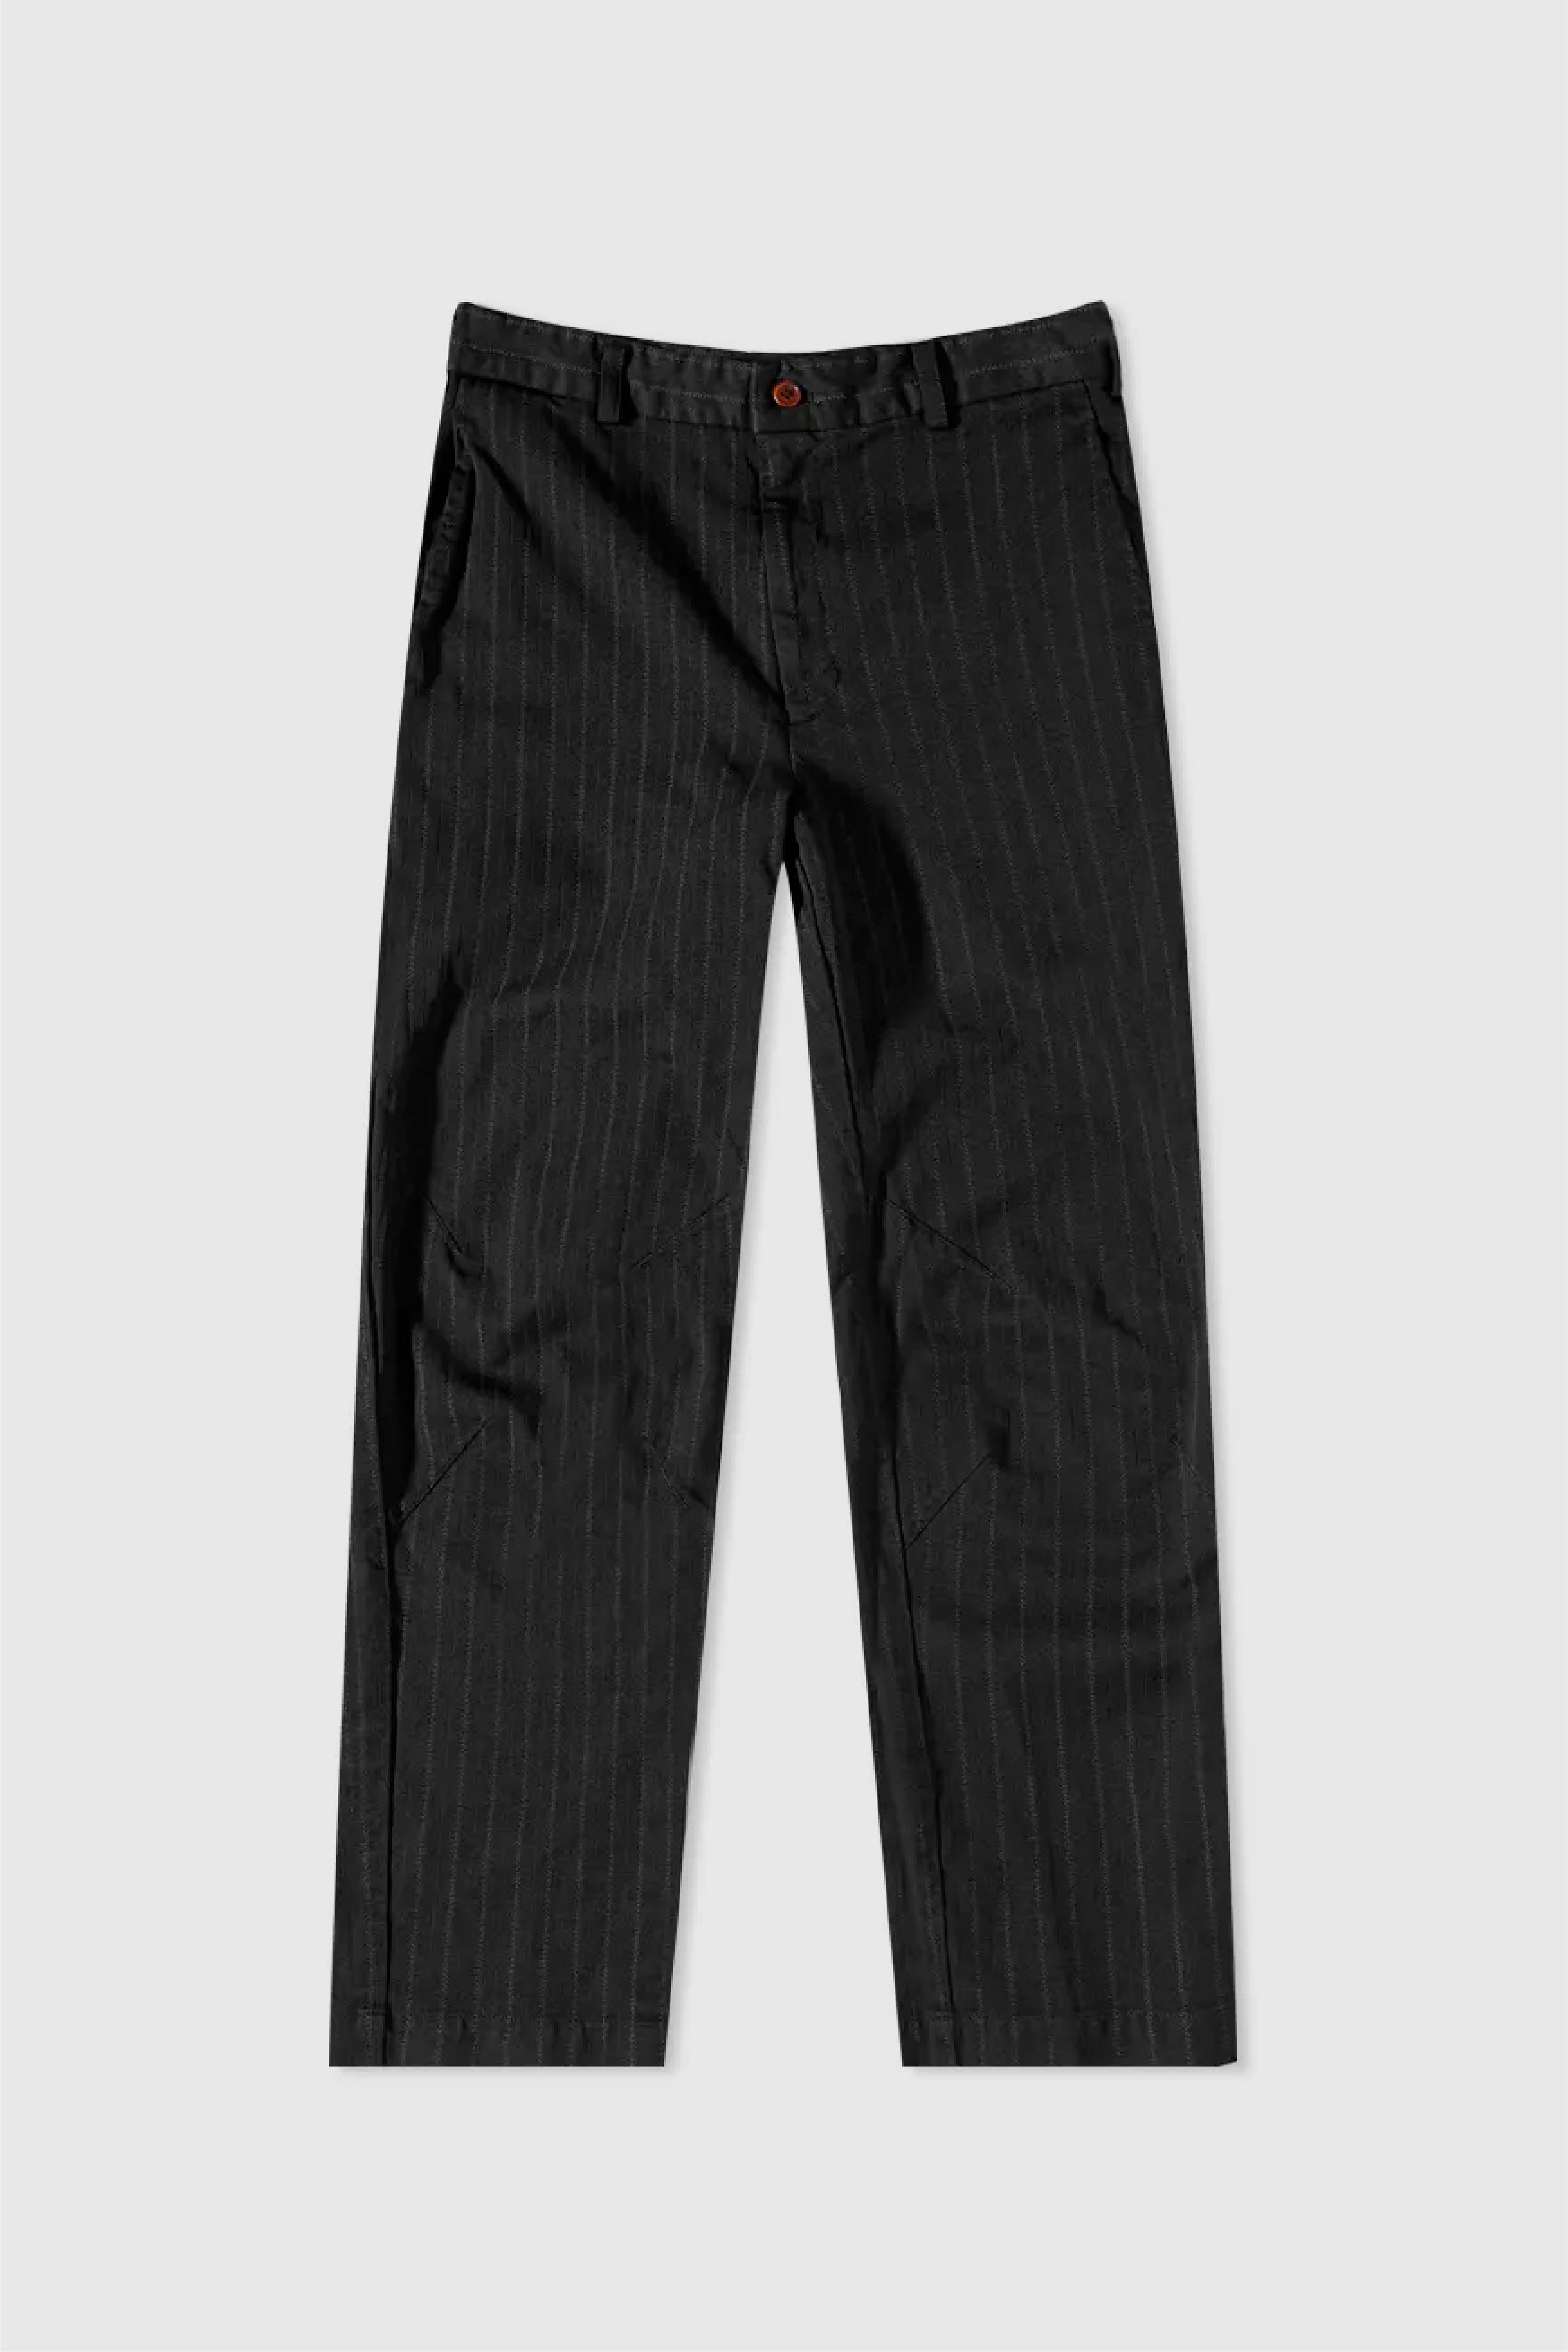 Selectshop FRAME - COMME DES GARÇONS BLACK Unisex Pants Bottoms Concept Store Dubai